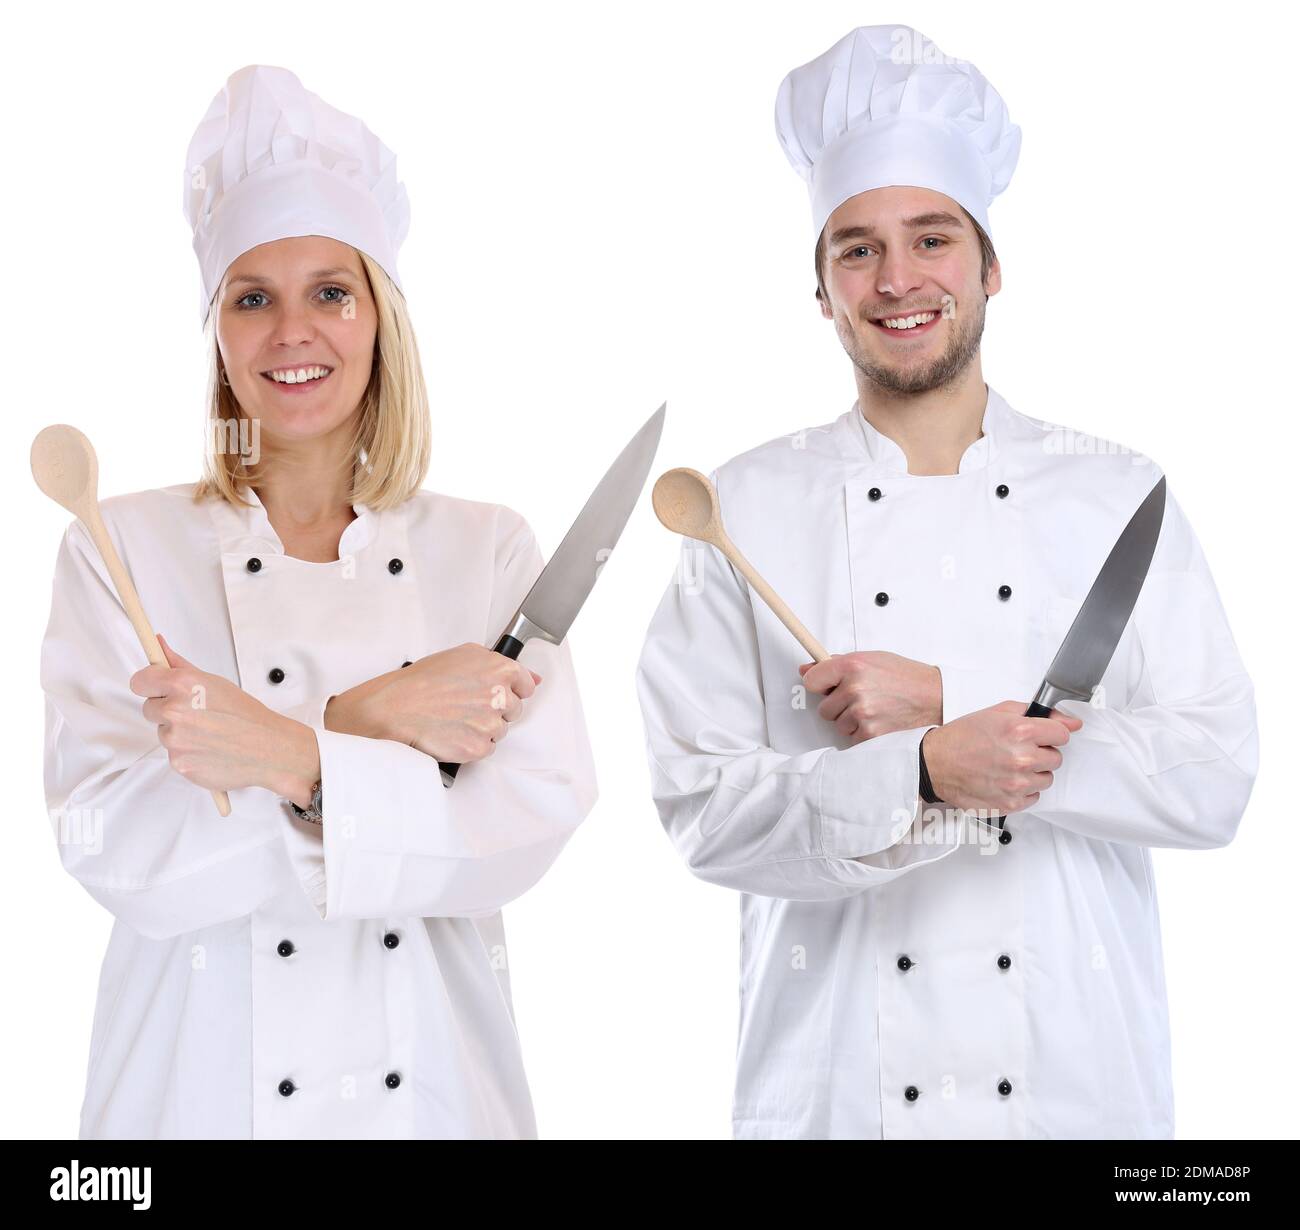 Koch Köche jung Azubi Azubis Ausbildung Auszubildender kochen Beruf Freisteller freigestellt vor einem weissen Hintergrund Stock Photo